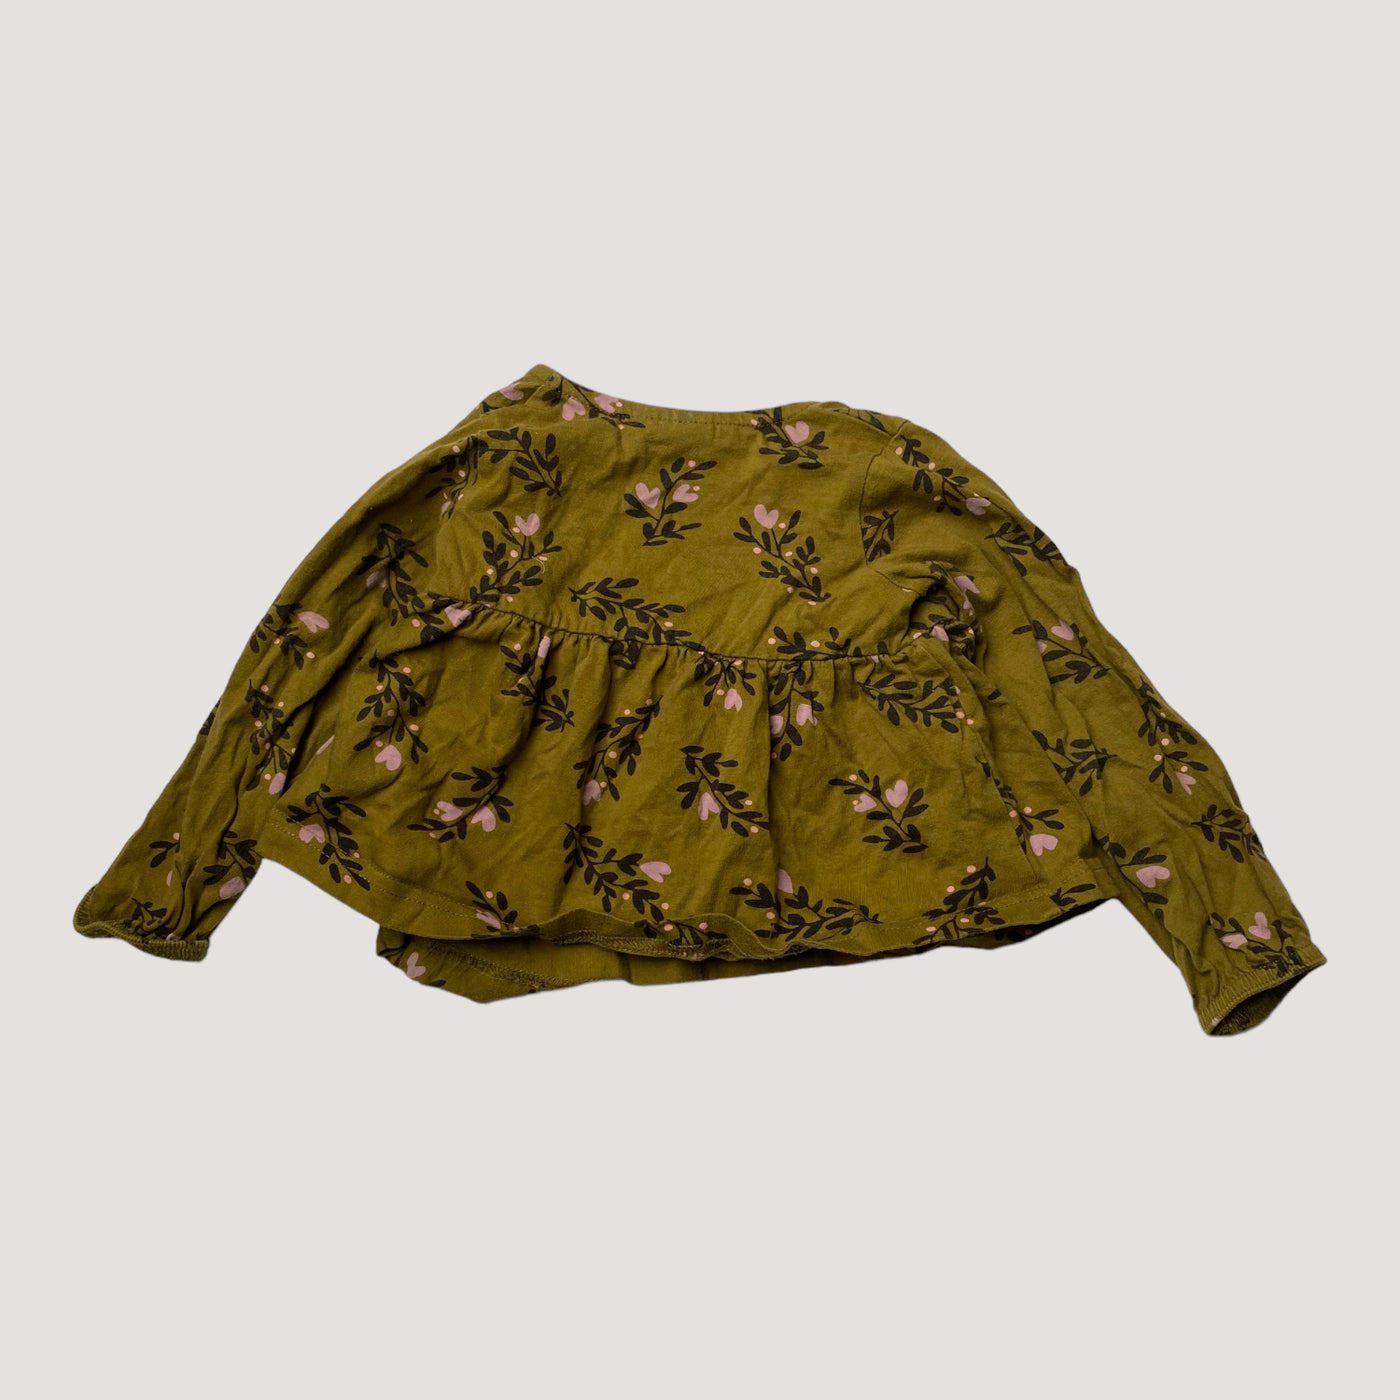 Mainio wrap shirt, secret garden  | 74/80cm